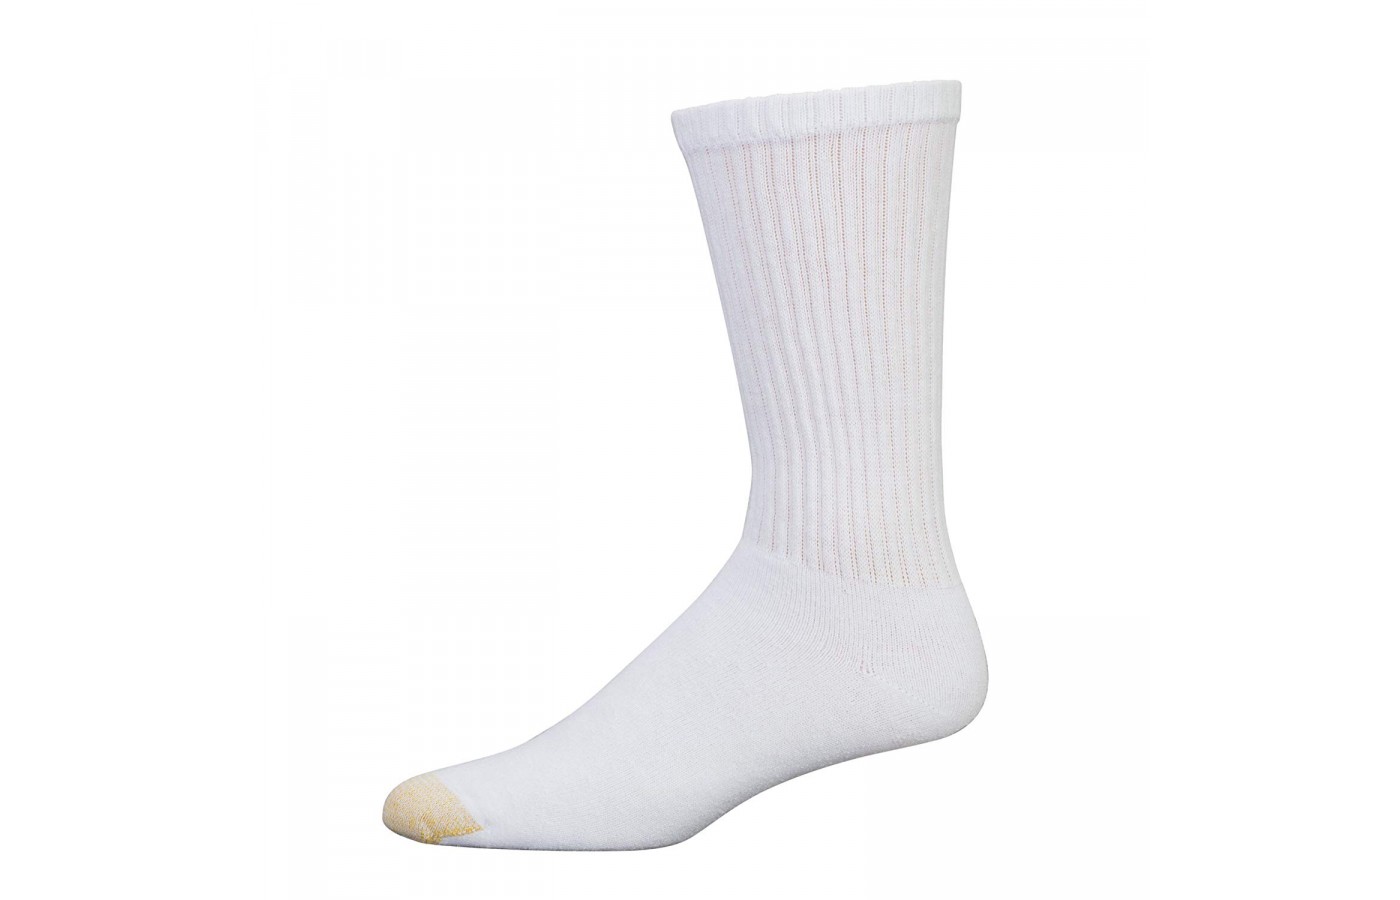 Gold Toe Crew Socks white side